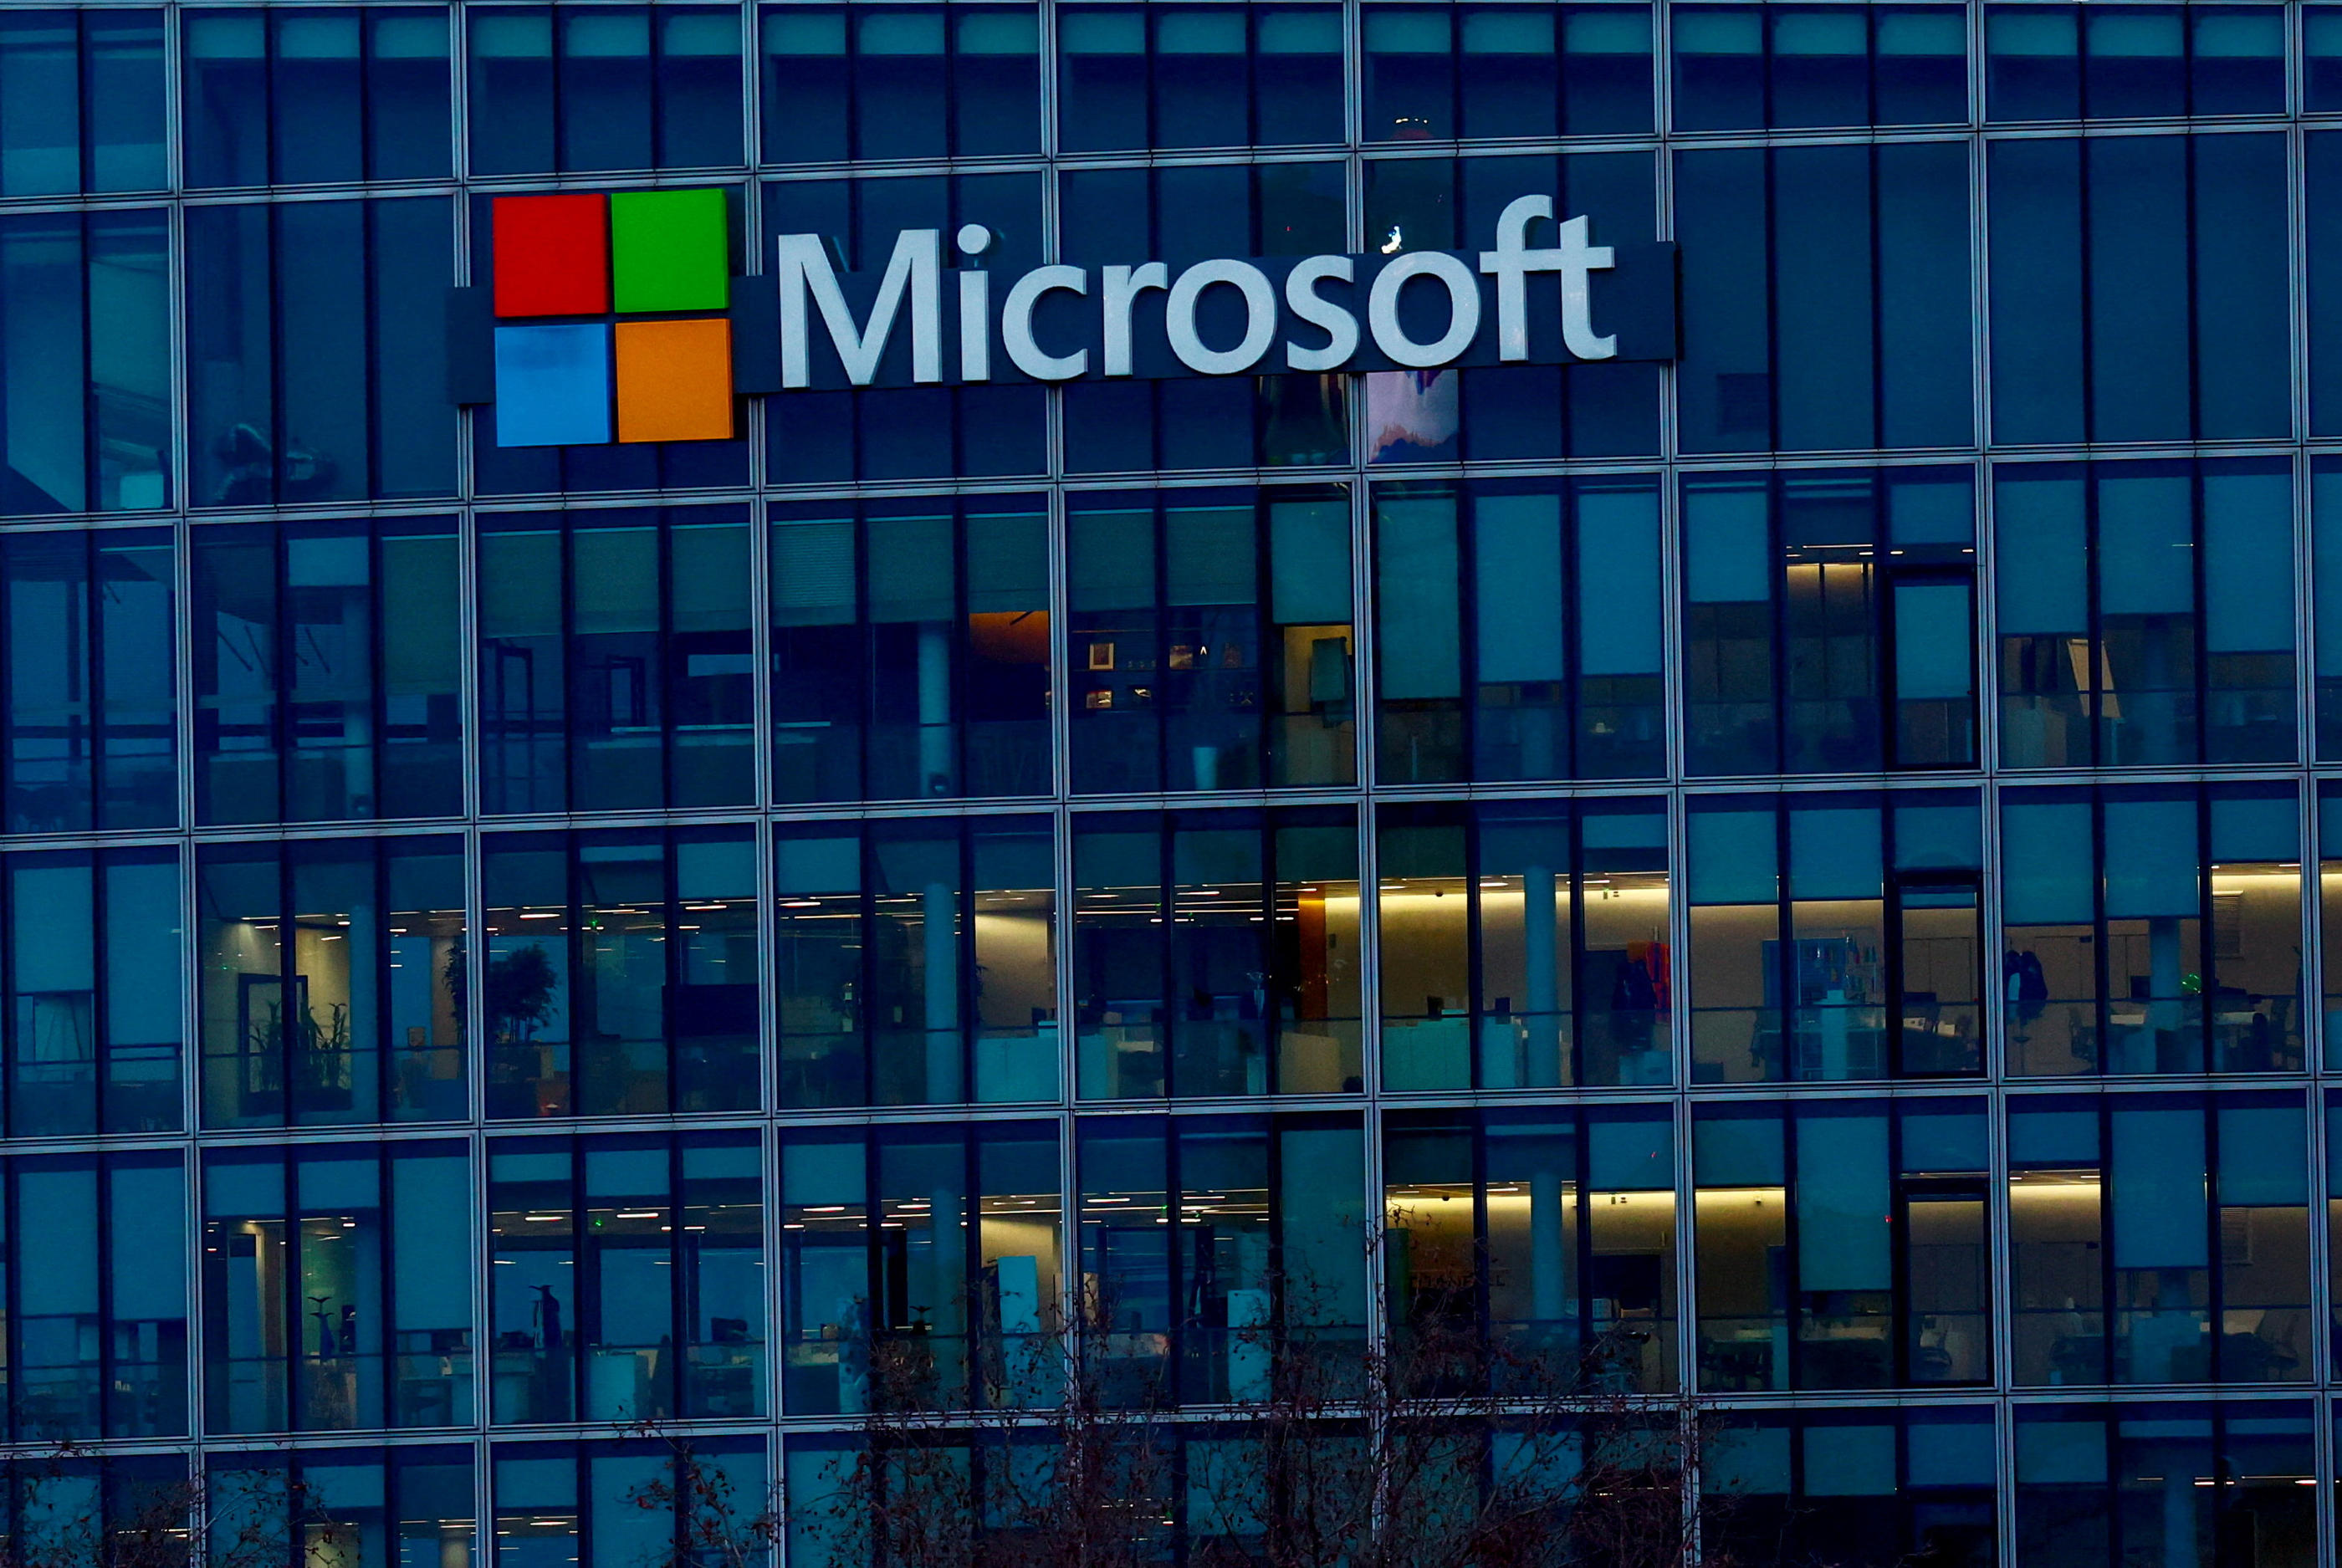 Le géant américain Microsoft a été choisi pour héberger le projet EMC2 qui stockera des données de santé à l’échelle européenne. Reuters/Gonzalo Fuentes